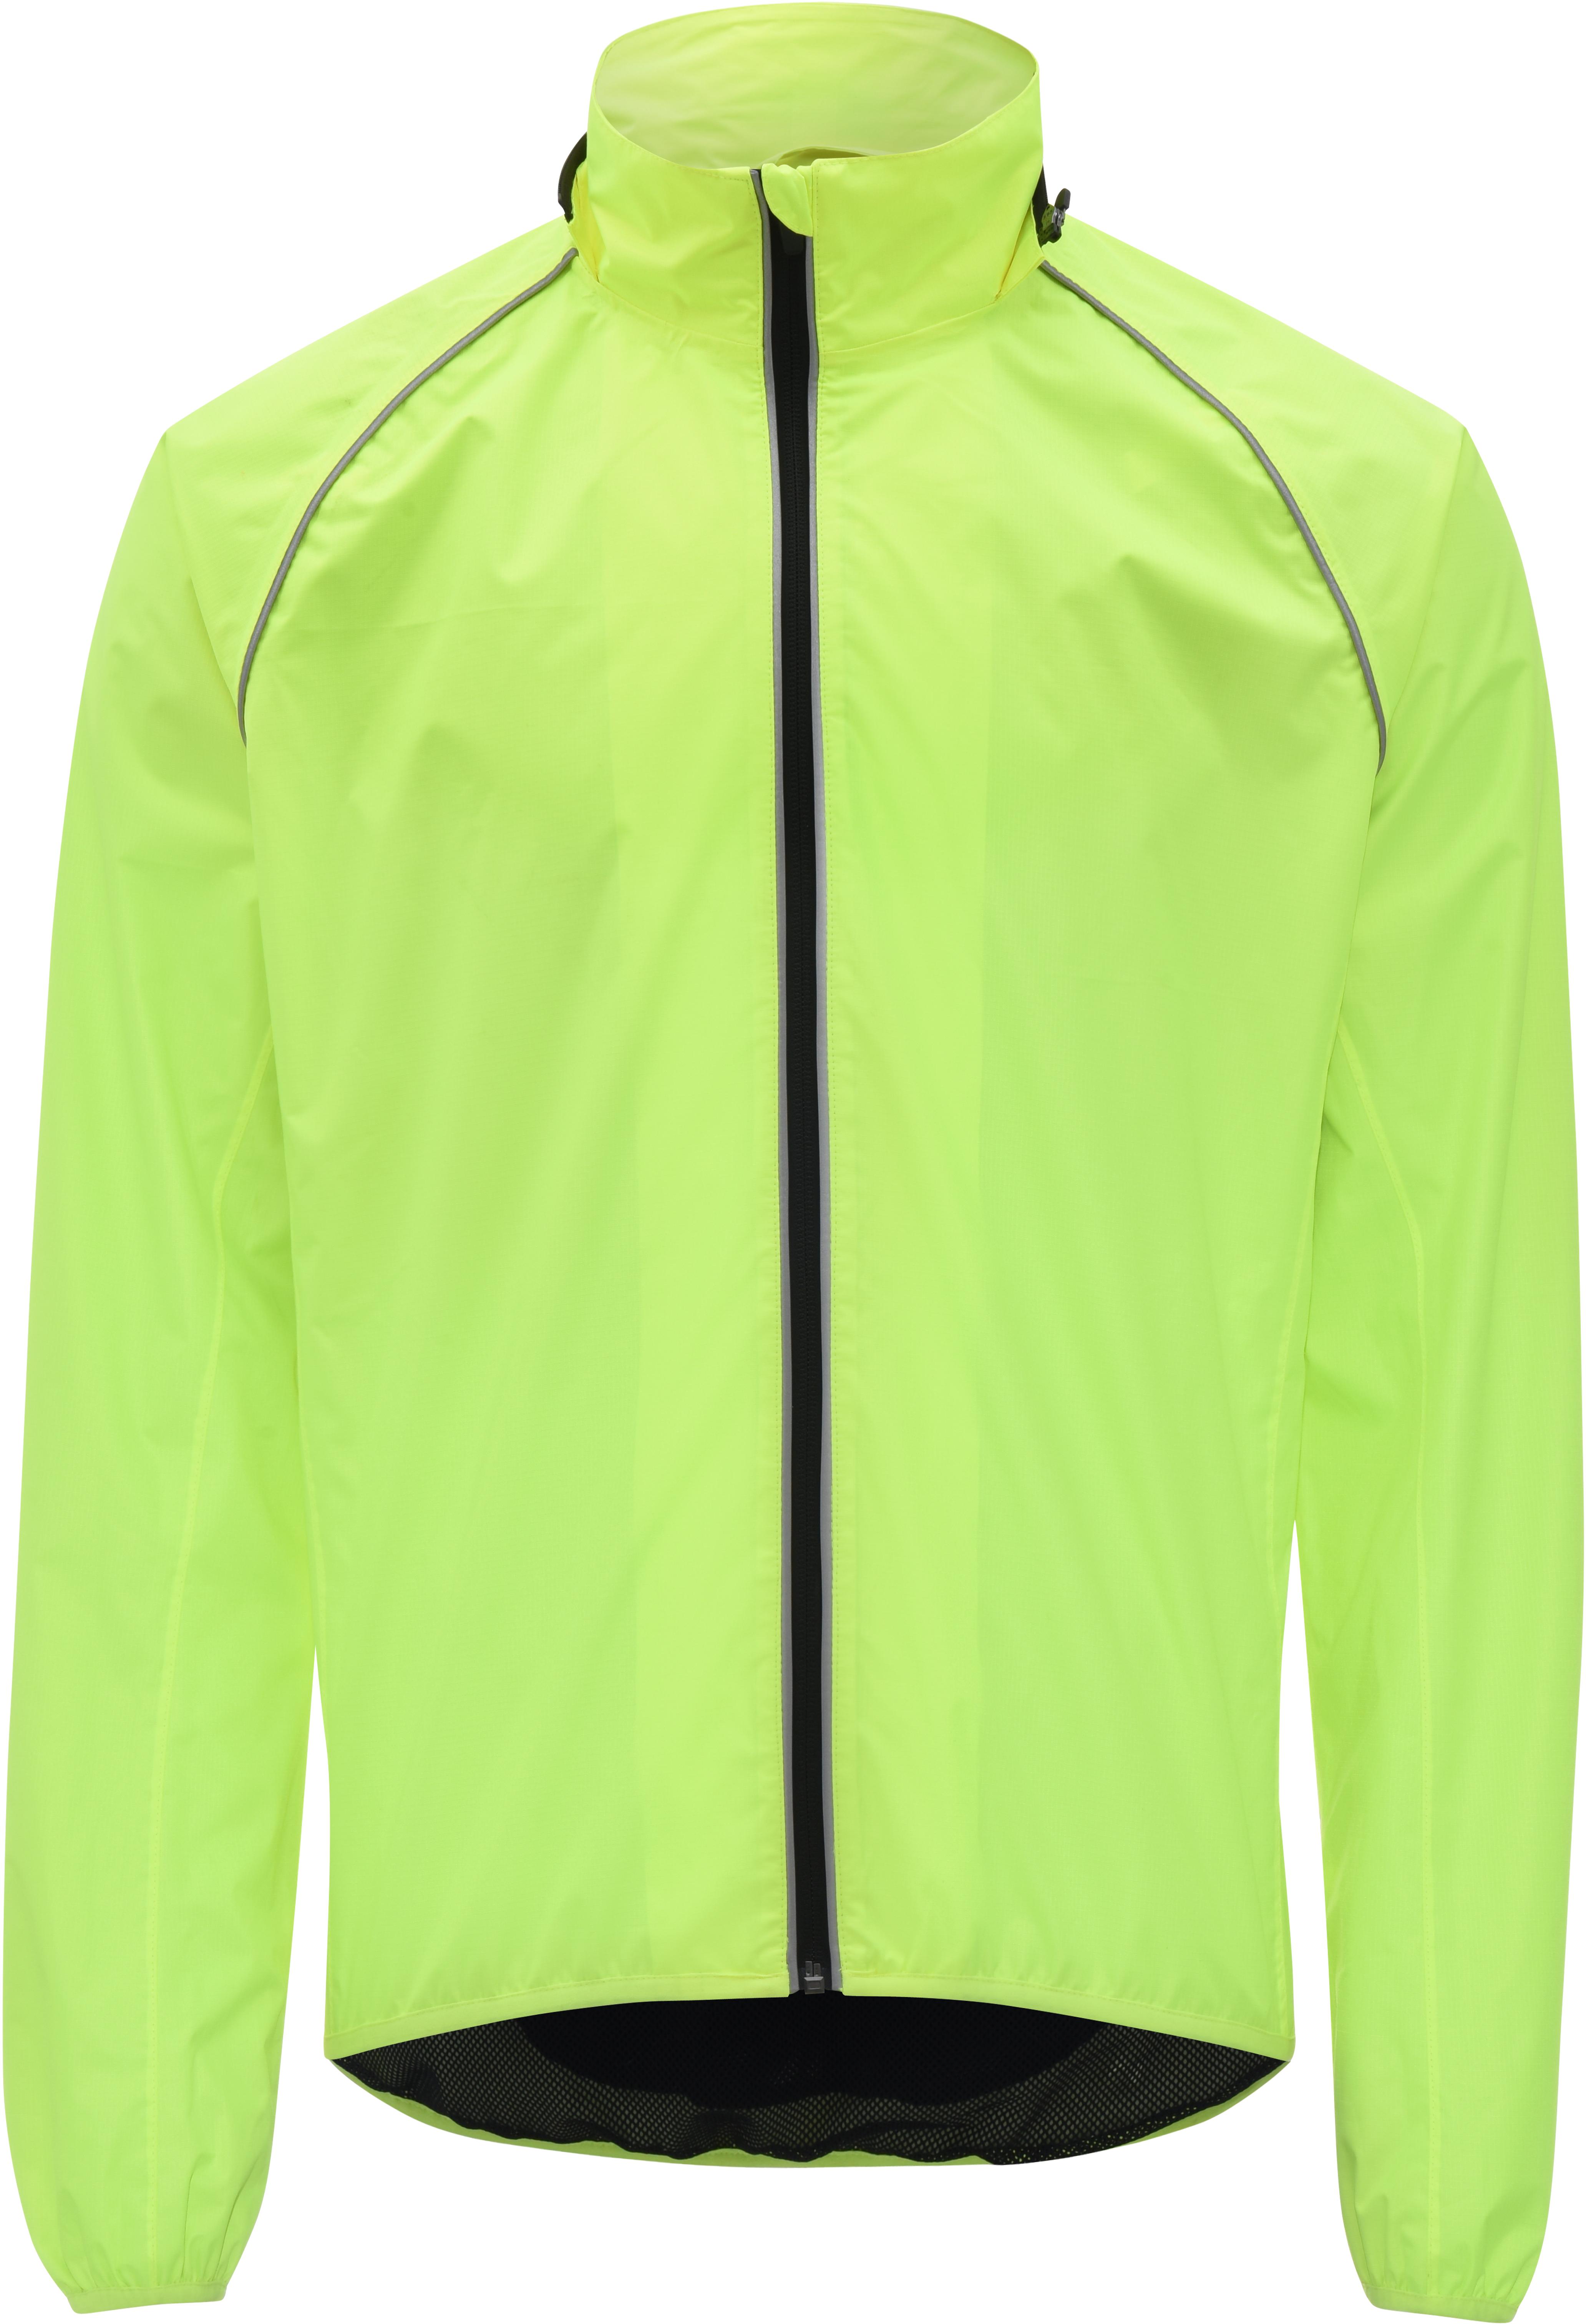 mens yellow cycling jacket